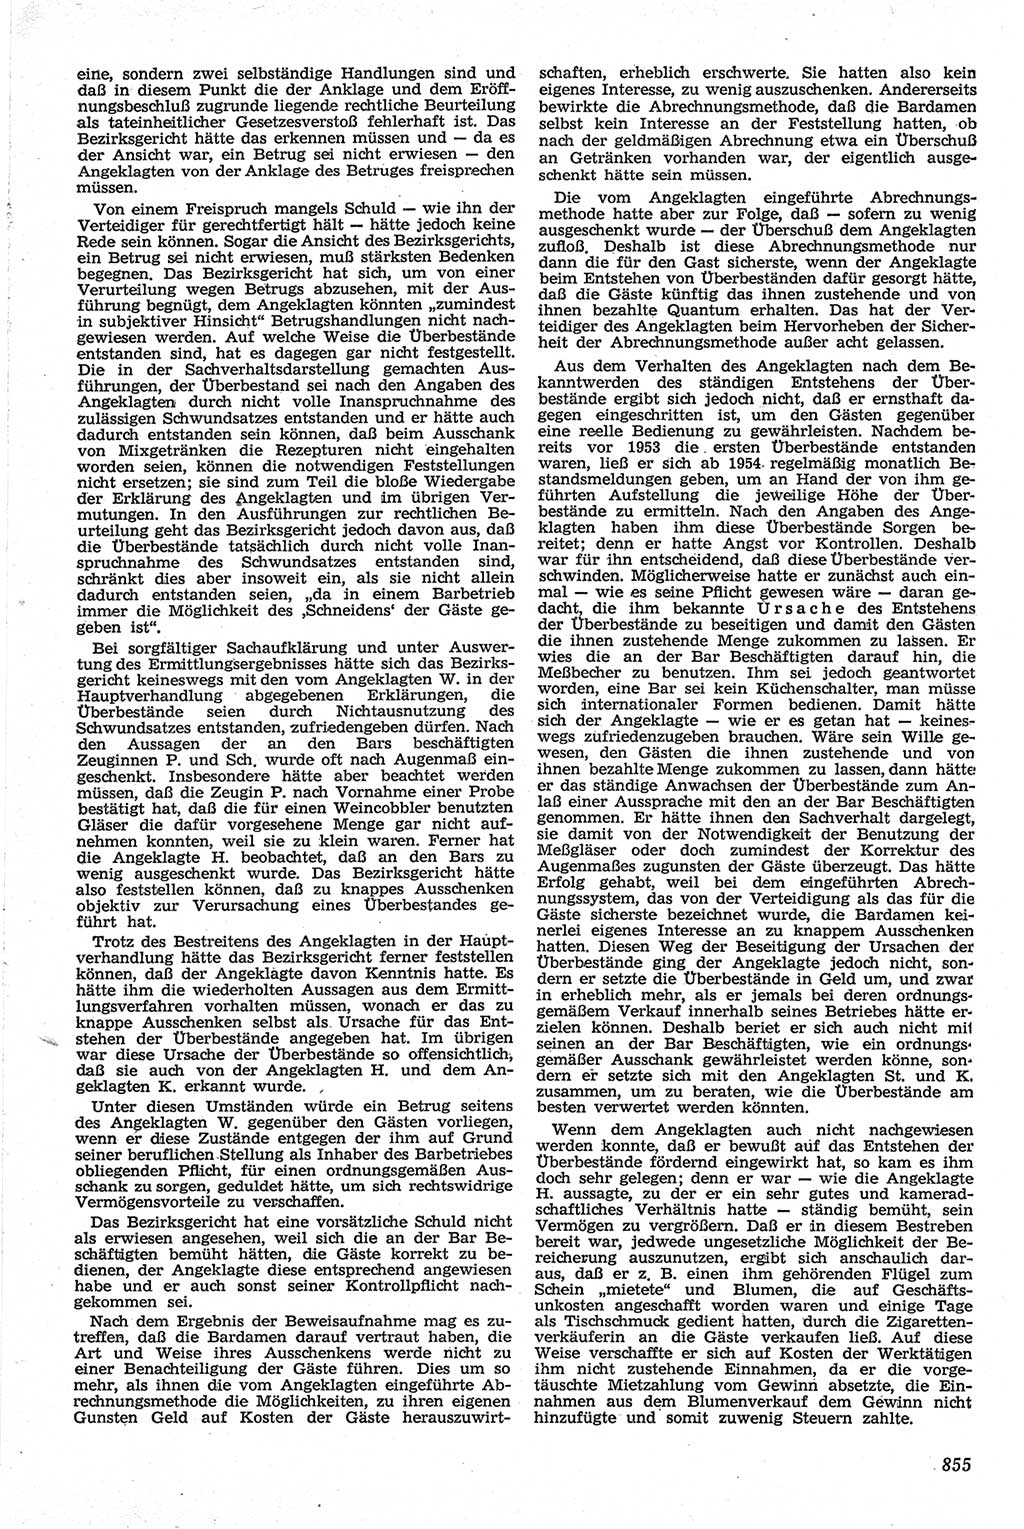 Neue Justiz (NJ), Zeitschrift für Recht und Rechtswissenschaft [Deutsche Demokratische Republik (DDR)], 13. Jahrgang 1959, Seite 855 (NJ DDR 1959, S. 855)